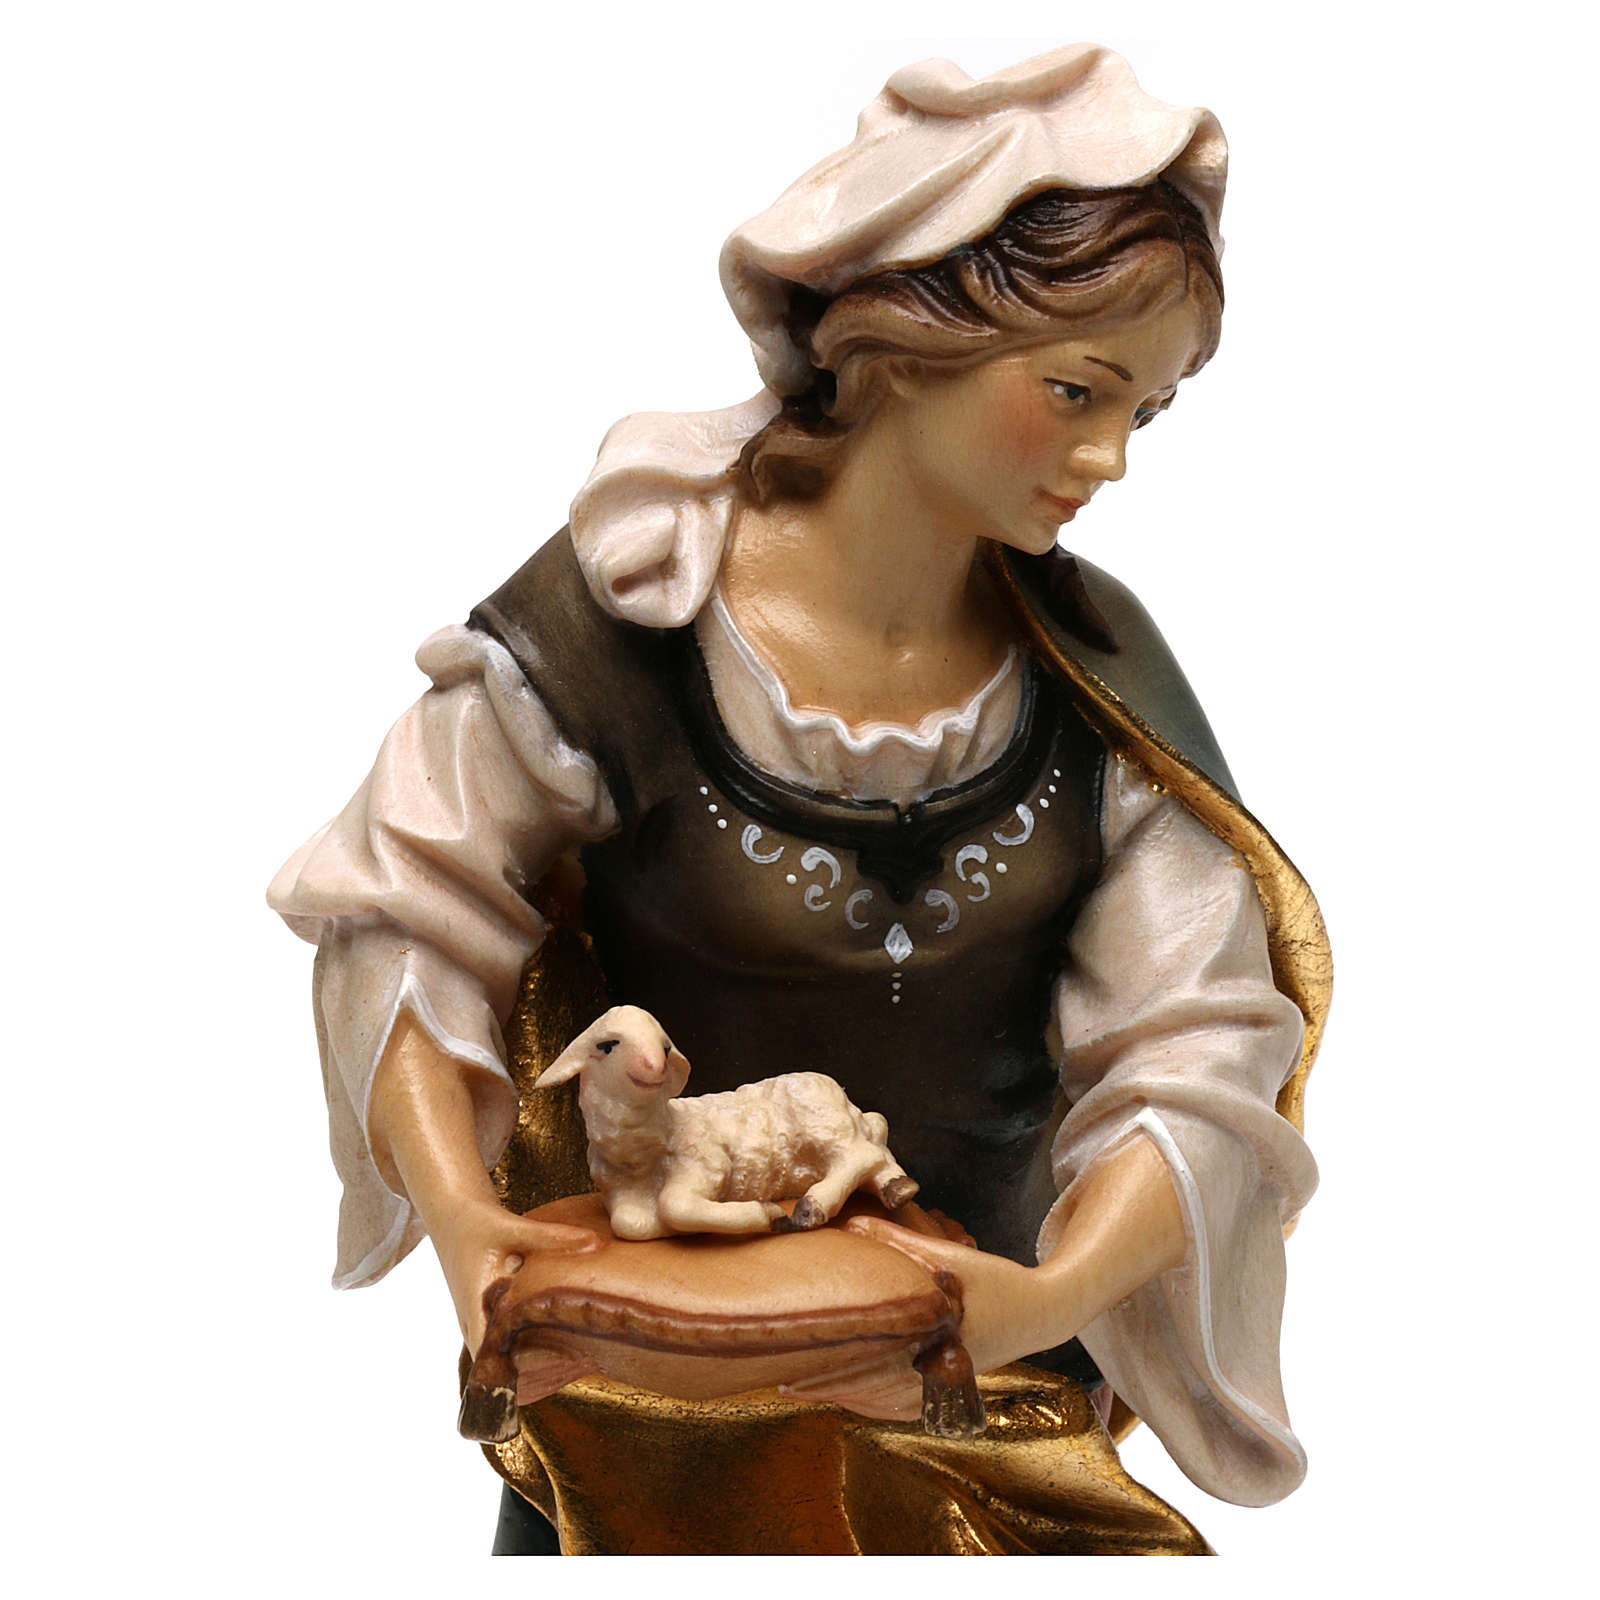 Statua Santa Agnese da Roma con agnello legno dipinto Val Gardena